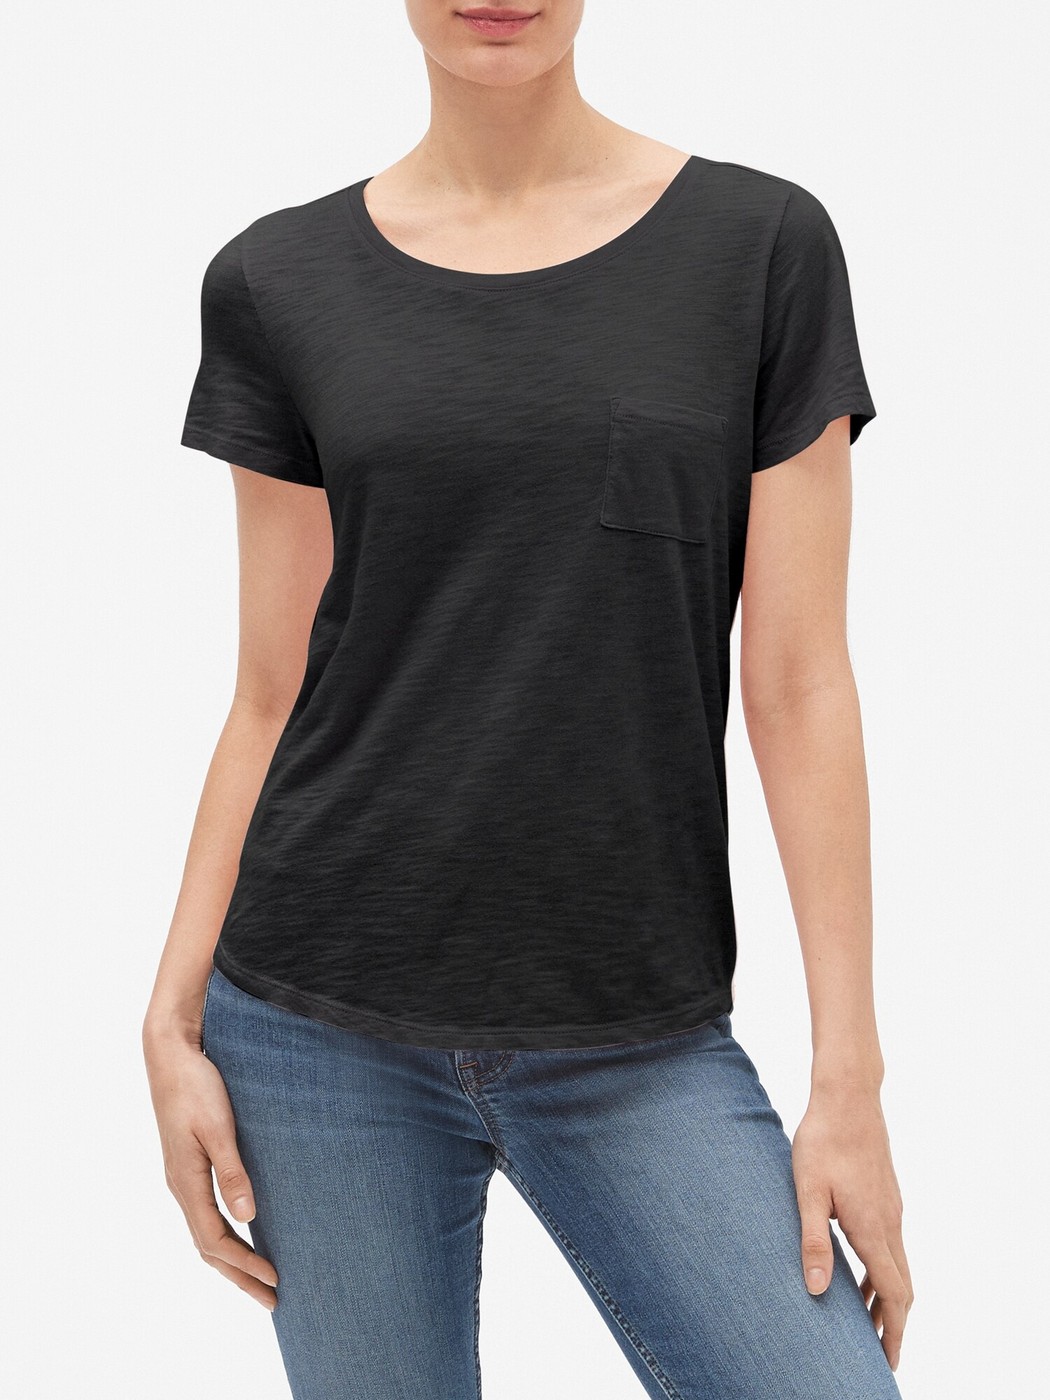 Черная футболка - женская футболка GAP, S, S